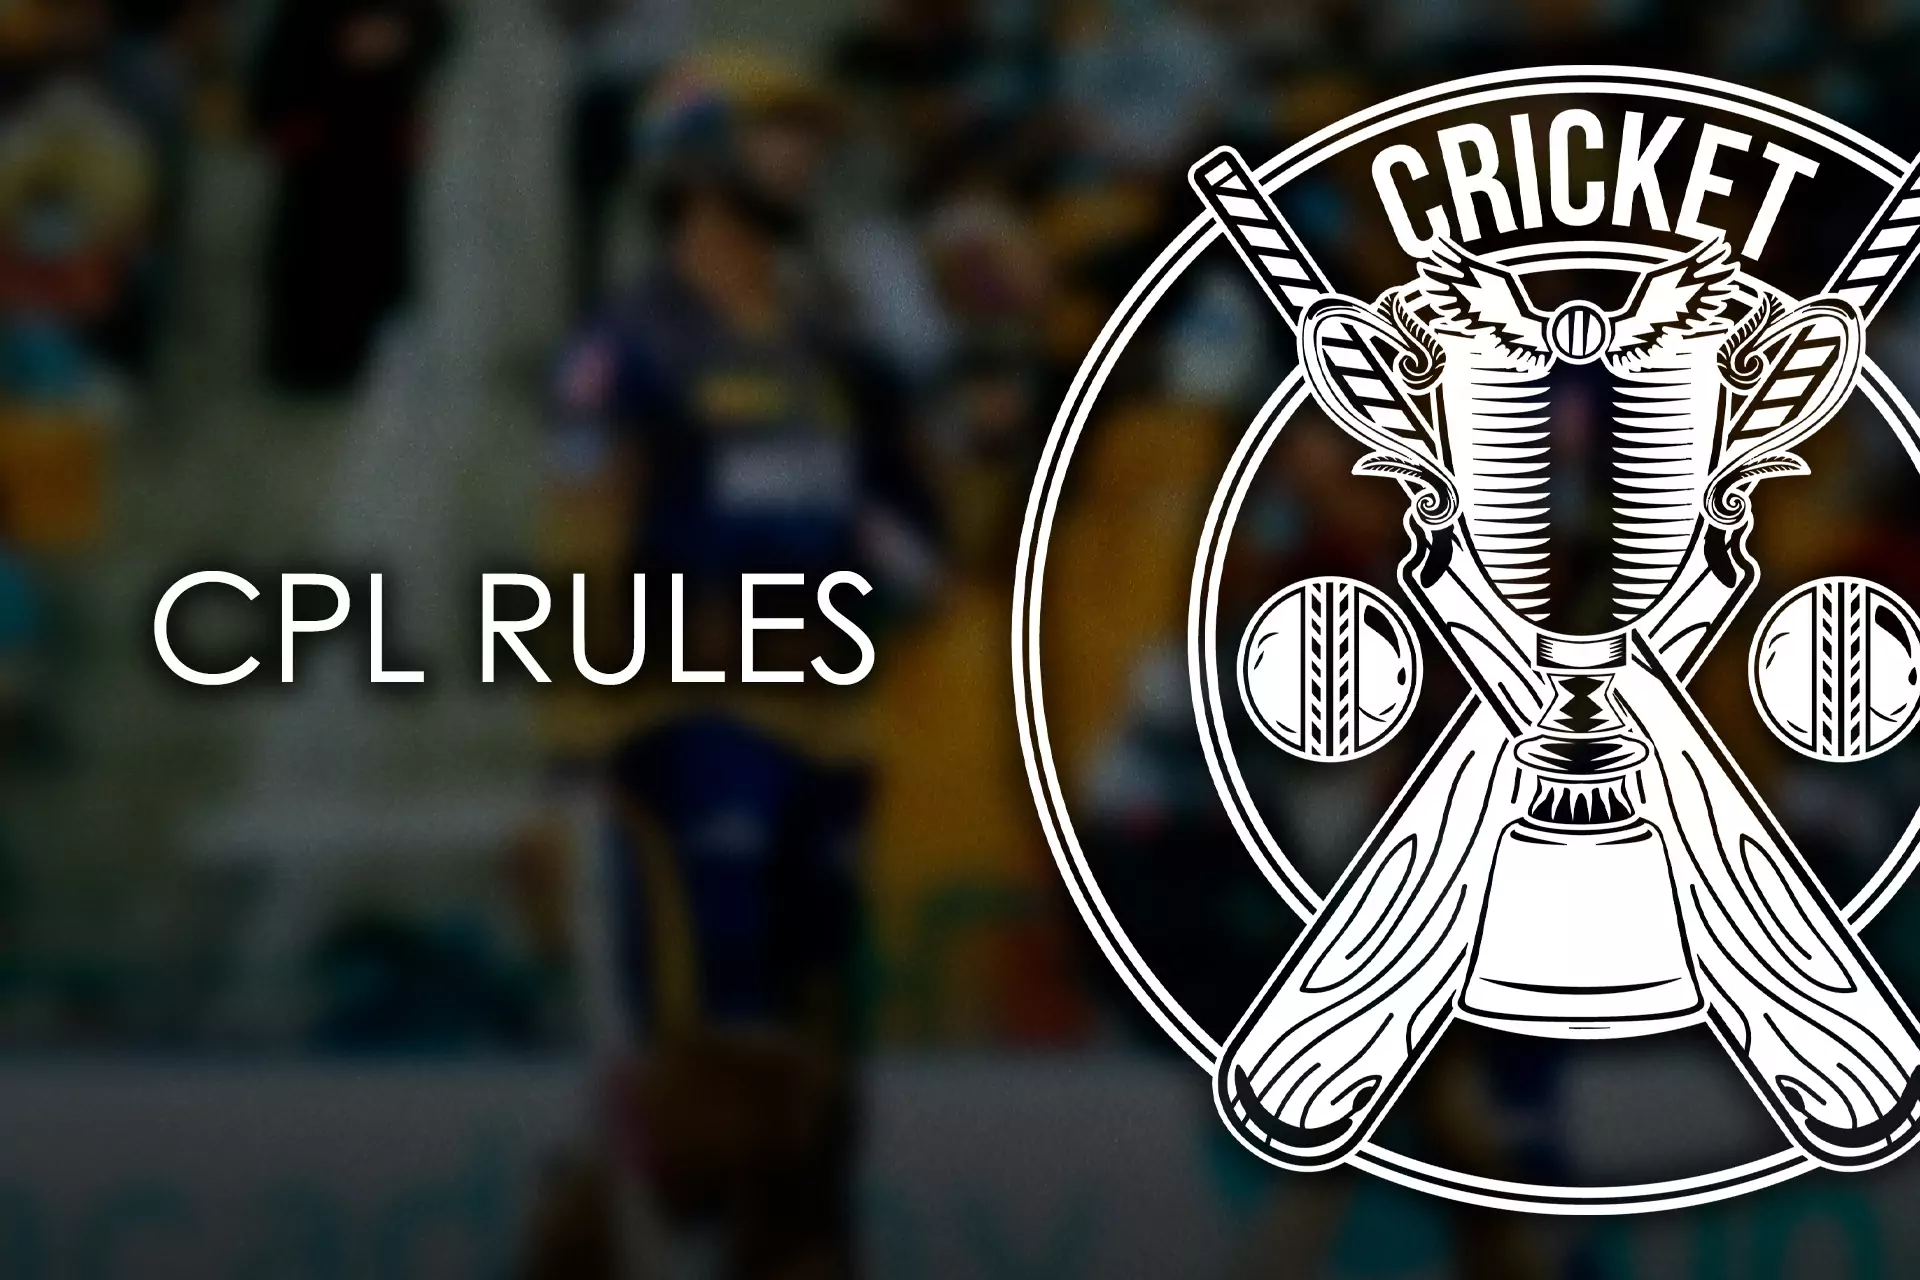 सीपीएल घटनाओं का विश्लेषण करने में सक्षम होने के लिए आपको टूर्नामेंट के विशेष नियमों को जानना होगा।